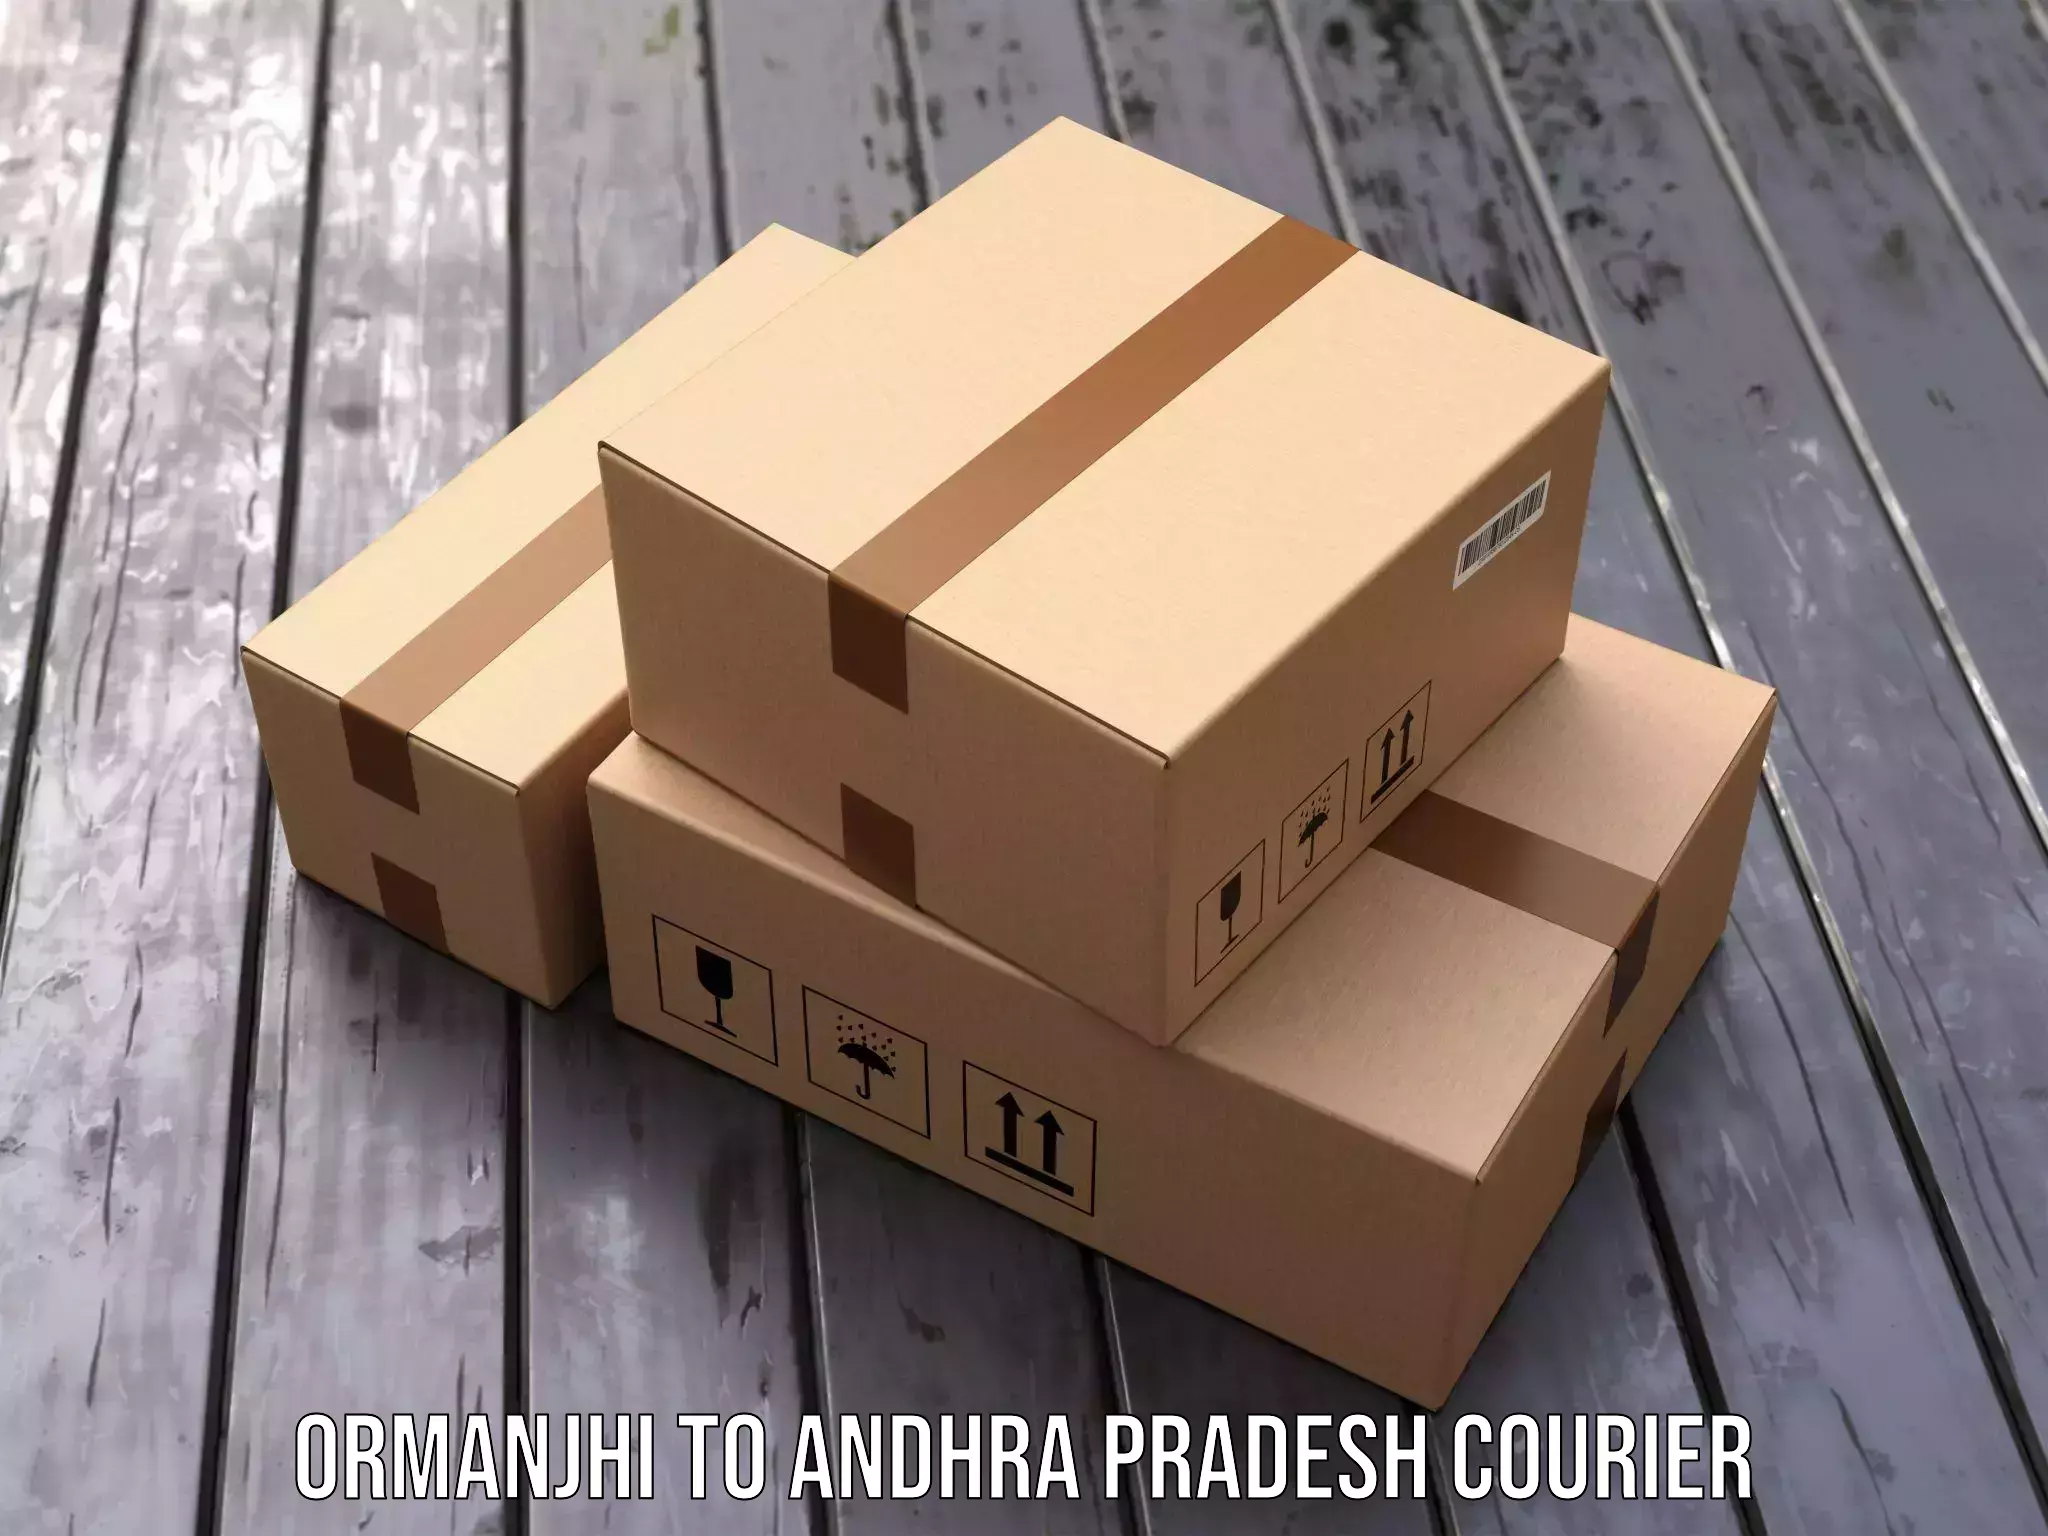 Courier service comparison Ormanjhi to Komarolu